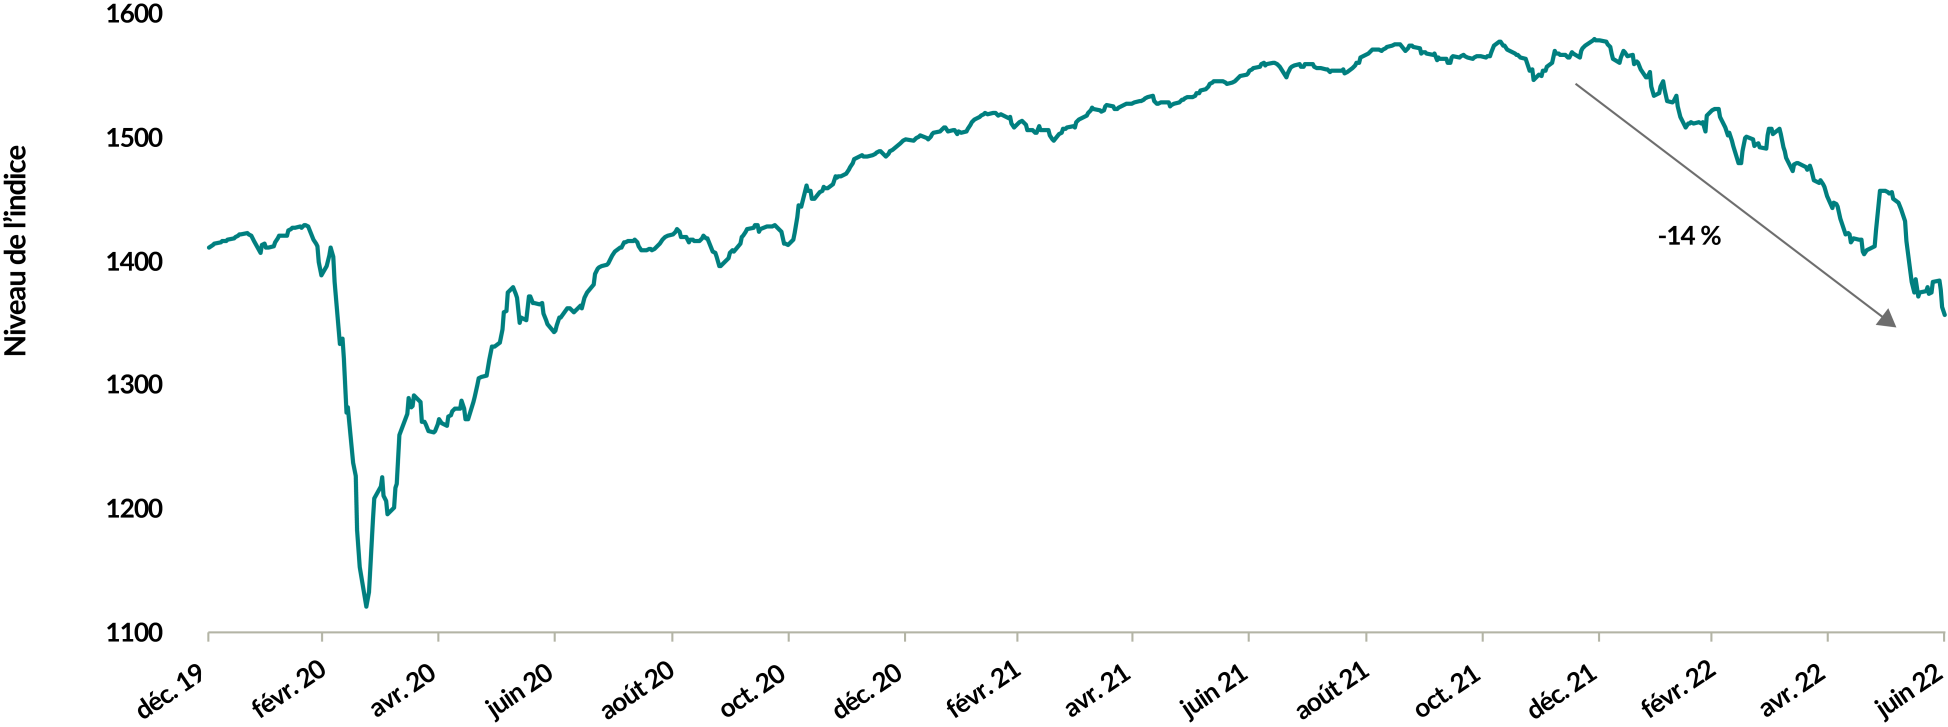 Un graphique montrant le niveau de l'indice ICE BofA US High Yield du 1er janvier 2020 au 30 juin 2022. La valeur de départ était d'environ 1 400, a chuté à environ 1 100 en mars 2020, a augmenté régulièrement vers 1 600 vers la fin de 2020, puis a chuté de 14 % à 1 360 à la fin de juin 2022.